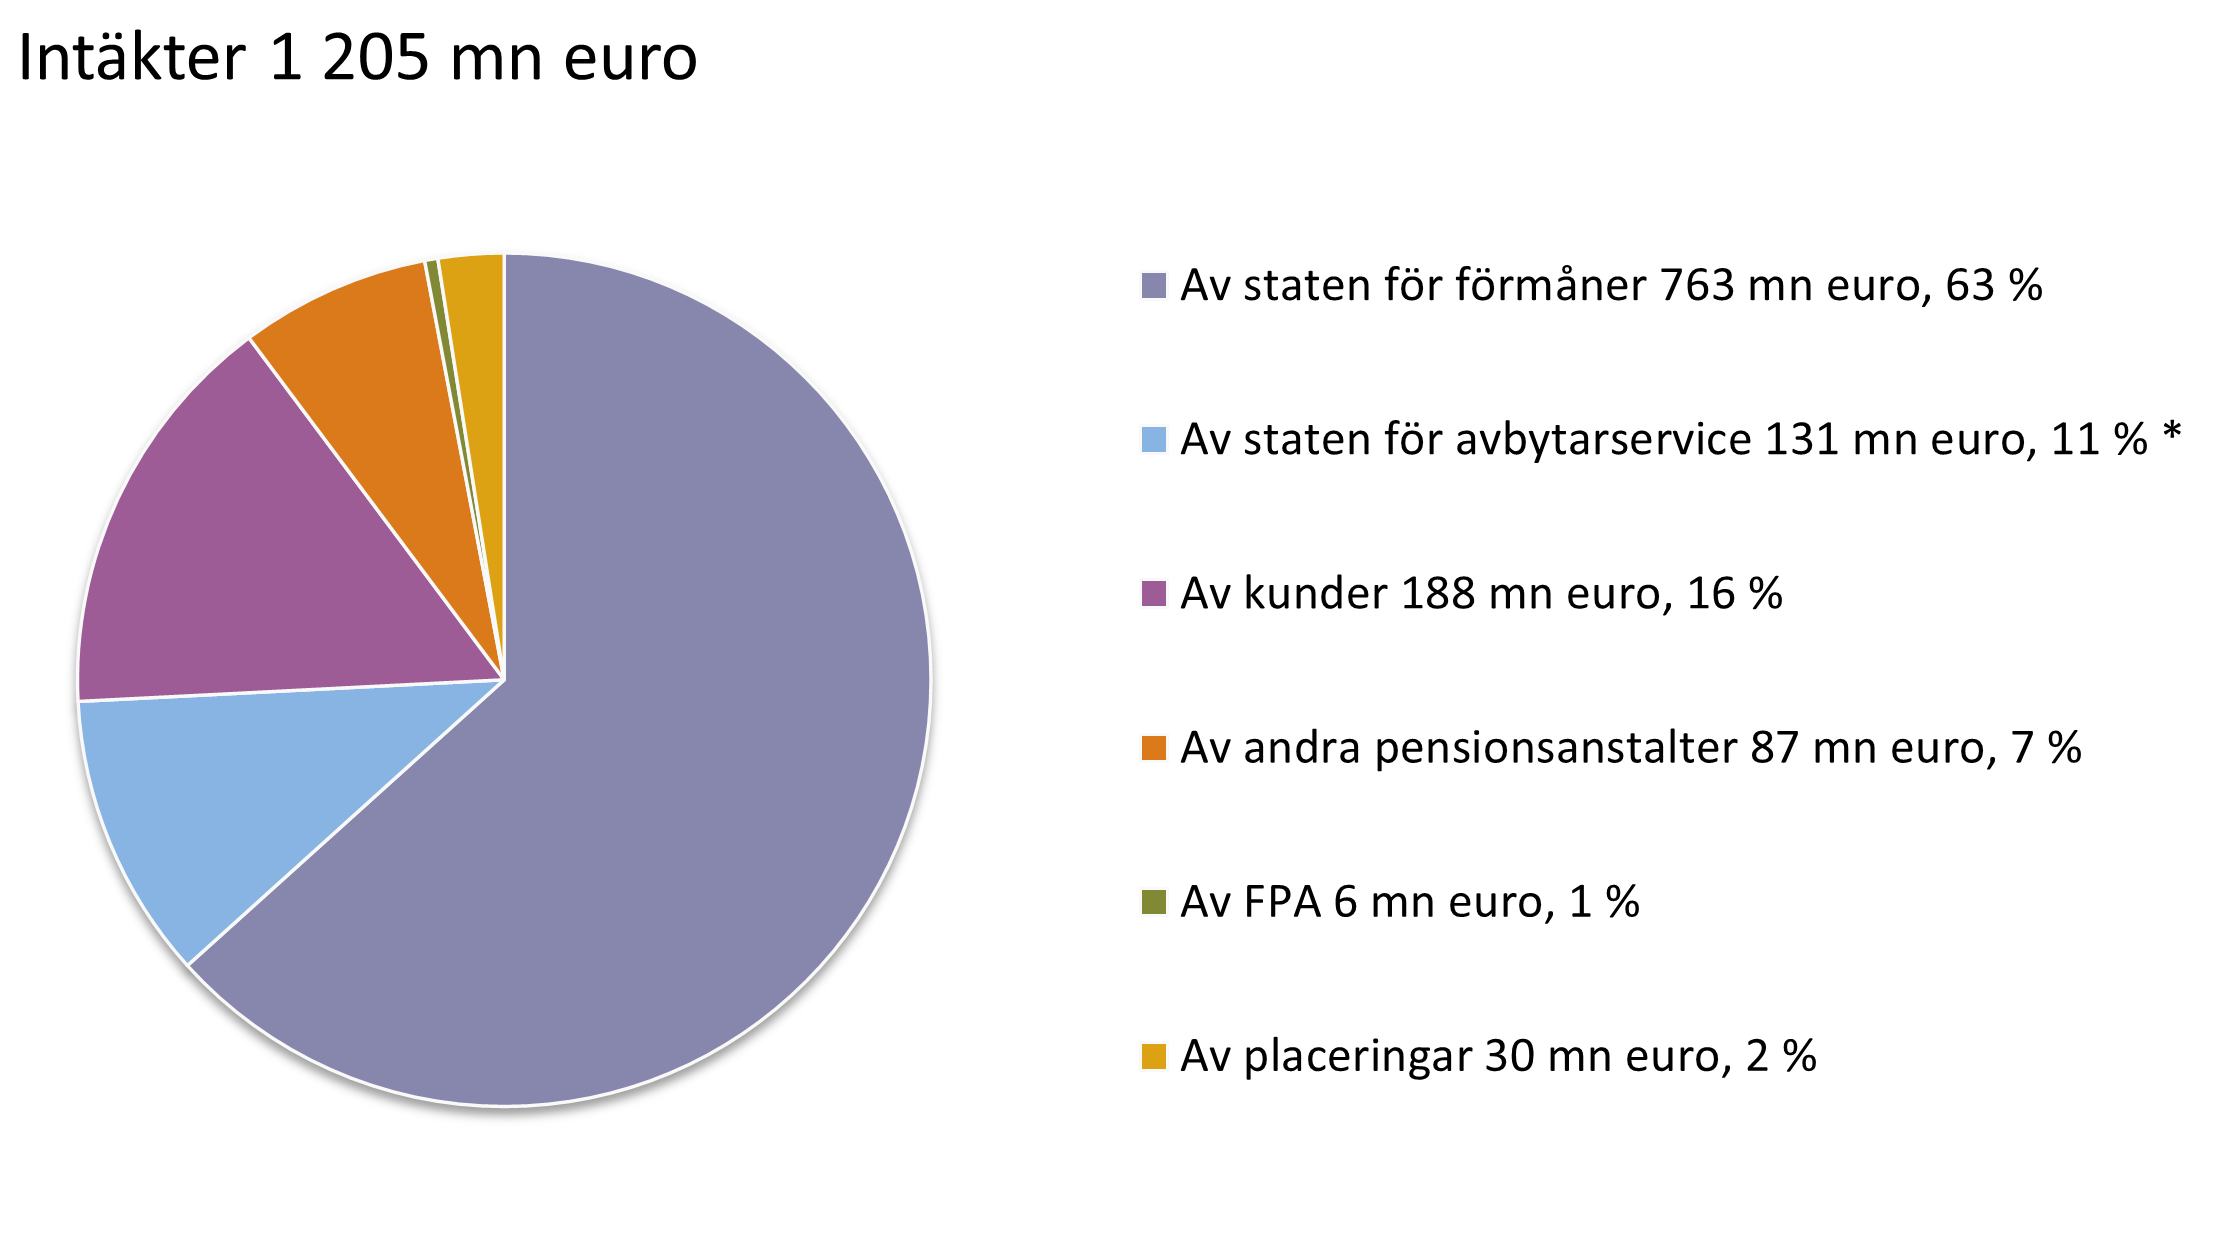 Intäkter 1 205 mn euro. Av staten för förmåner 763 mn euro, 63 %. Av staten för avbytarservice 131 mn euro, 11 % *. Av kunder 188 mn euro, 16 %. Av andra pensionsanstalter 87 mn euro, 7 %. Av FPA 6 mn euro, 1 %. Av placeringar 30 mn euro, 2 %.